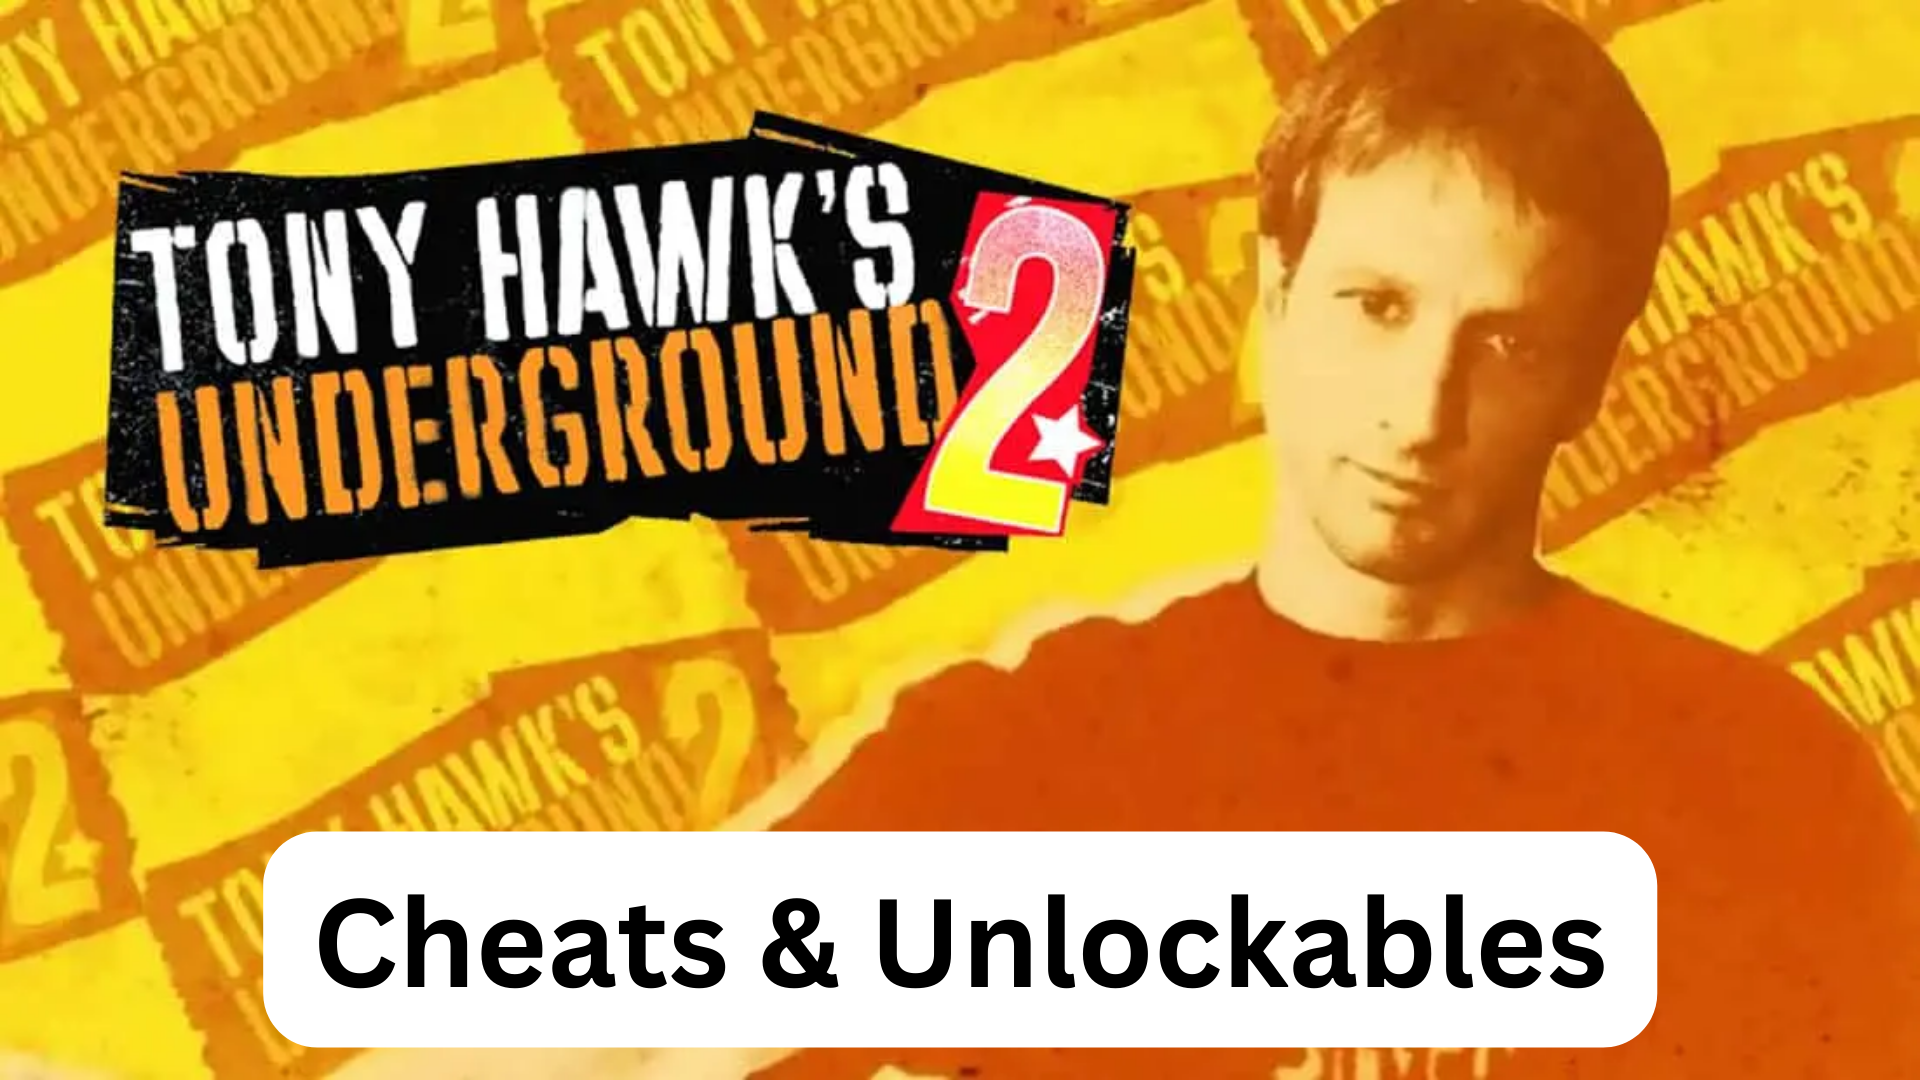 tony hawk's underground 2 cheats and unlockables